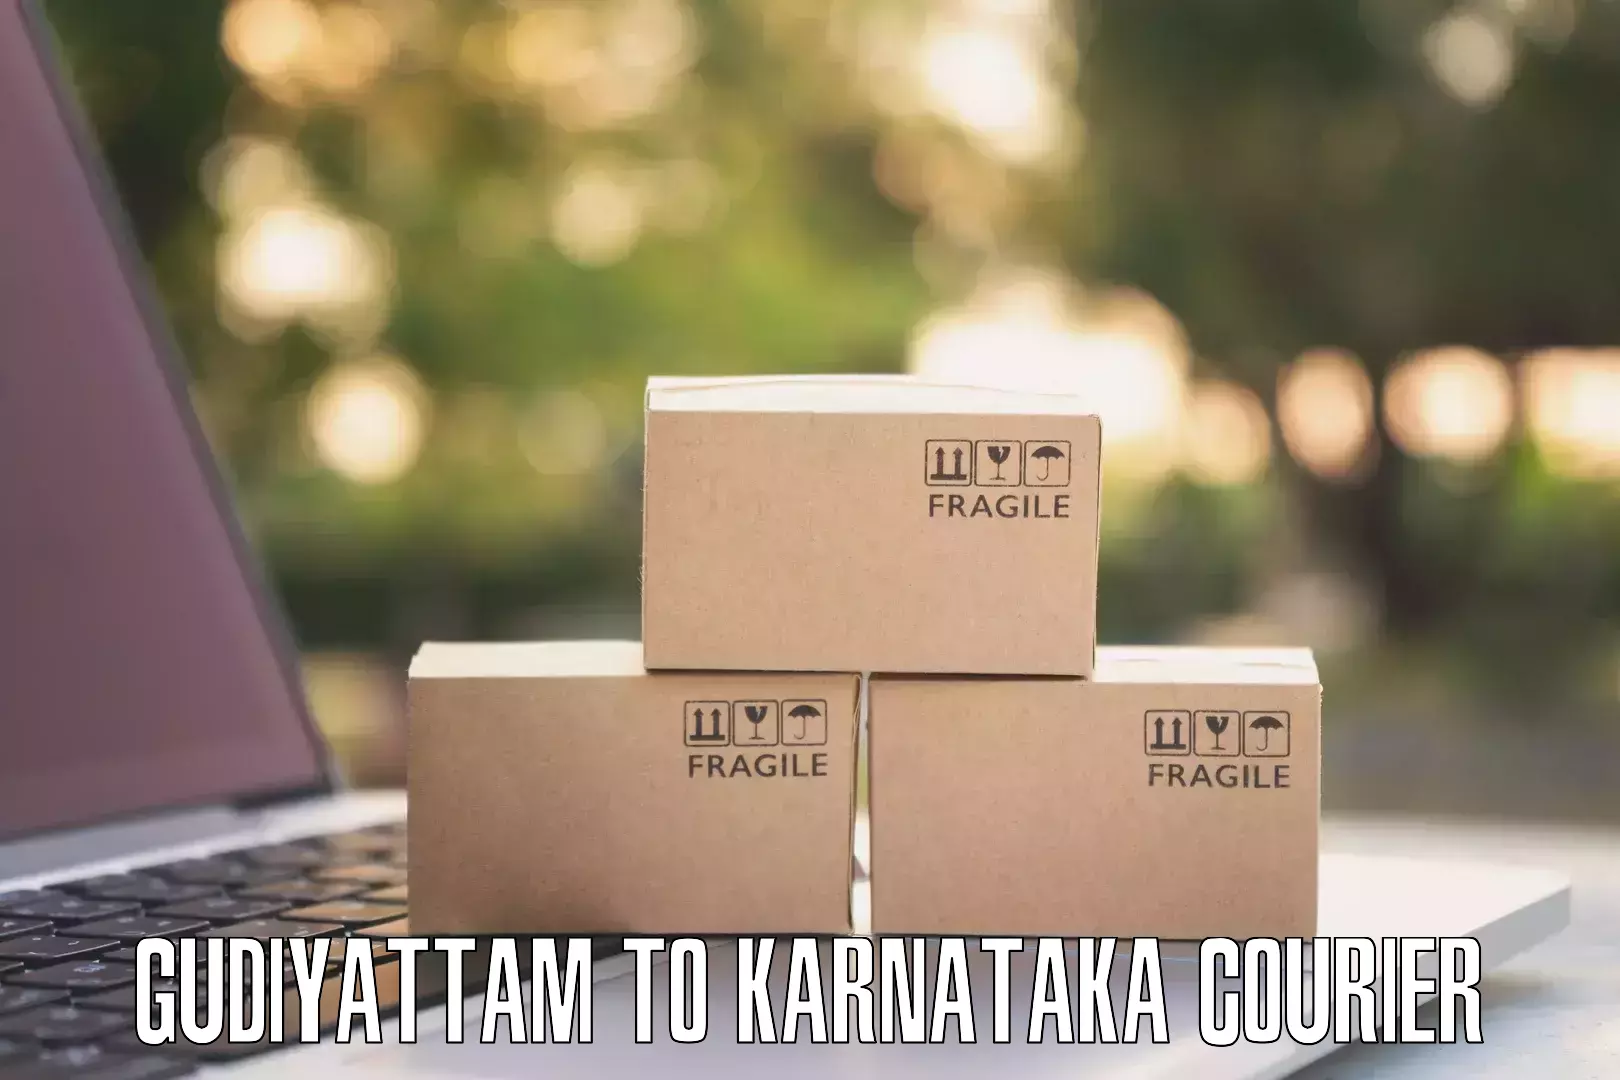 High-speed delivery Gudiyattam to Karnataka